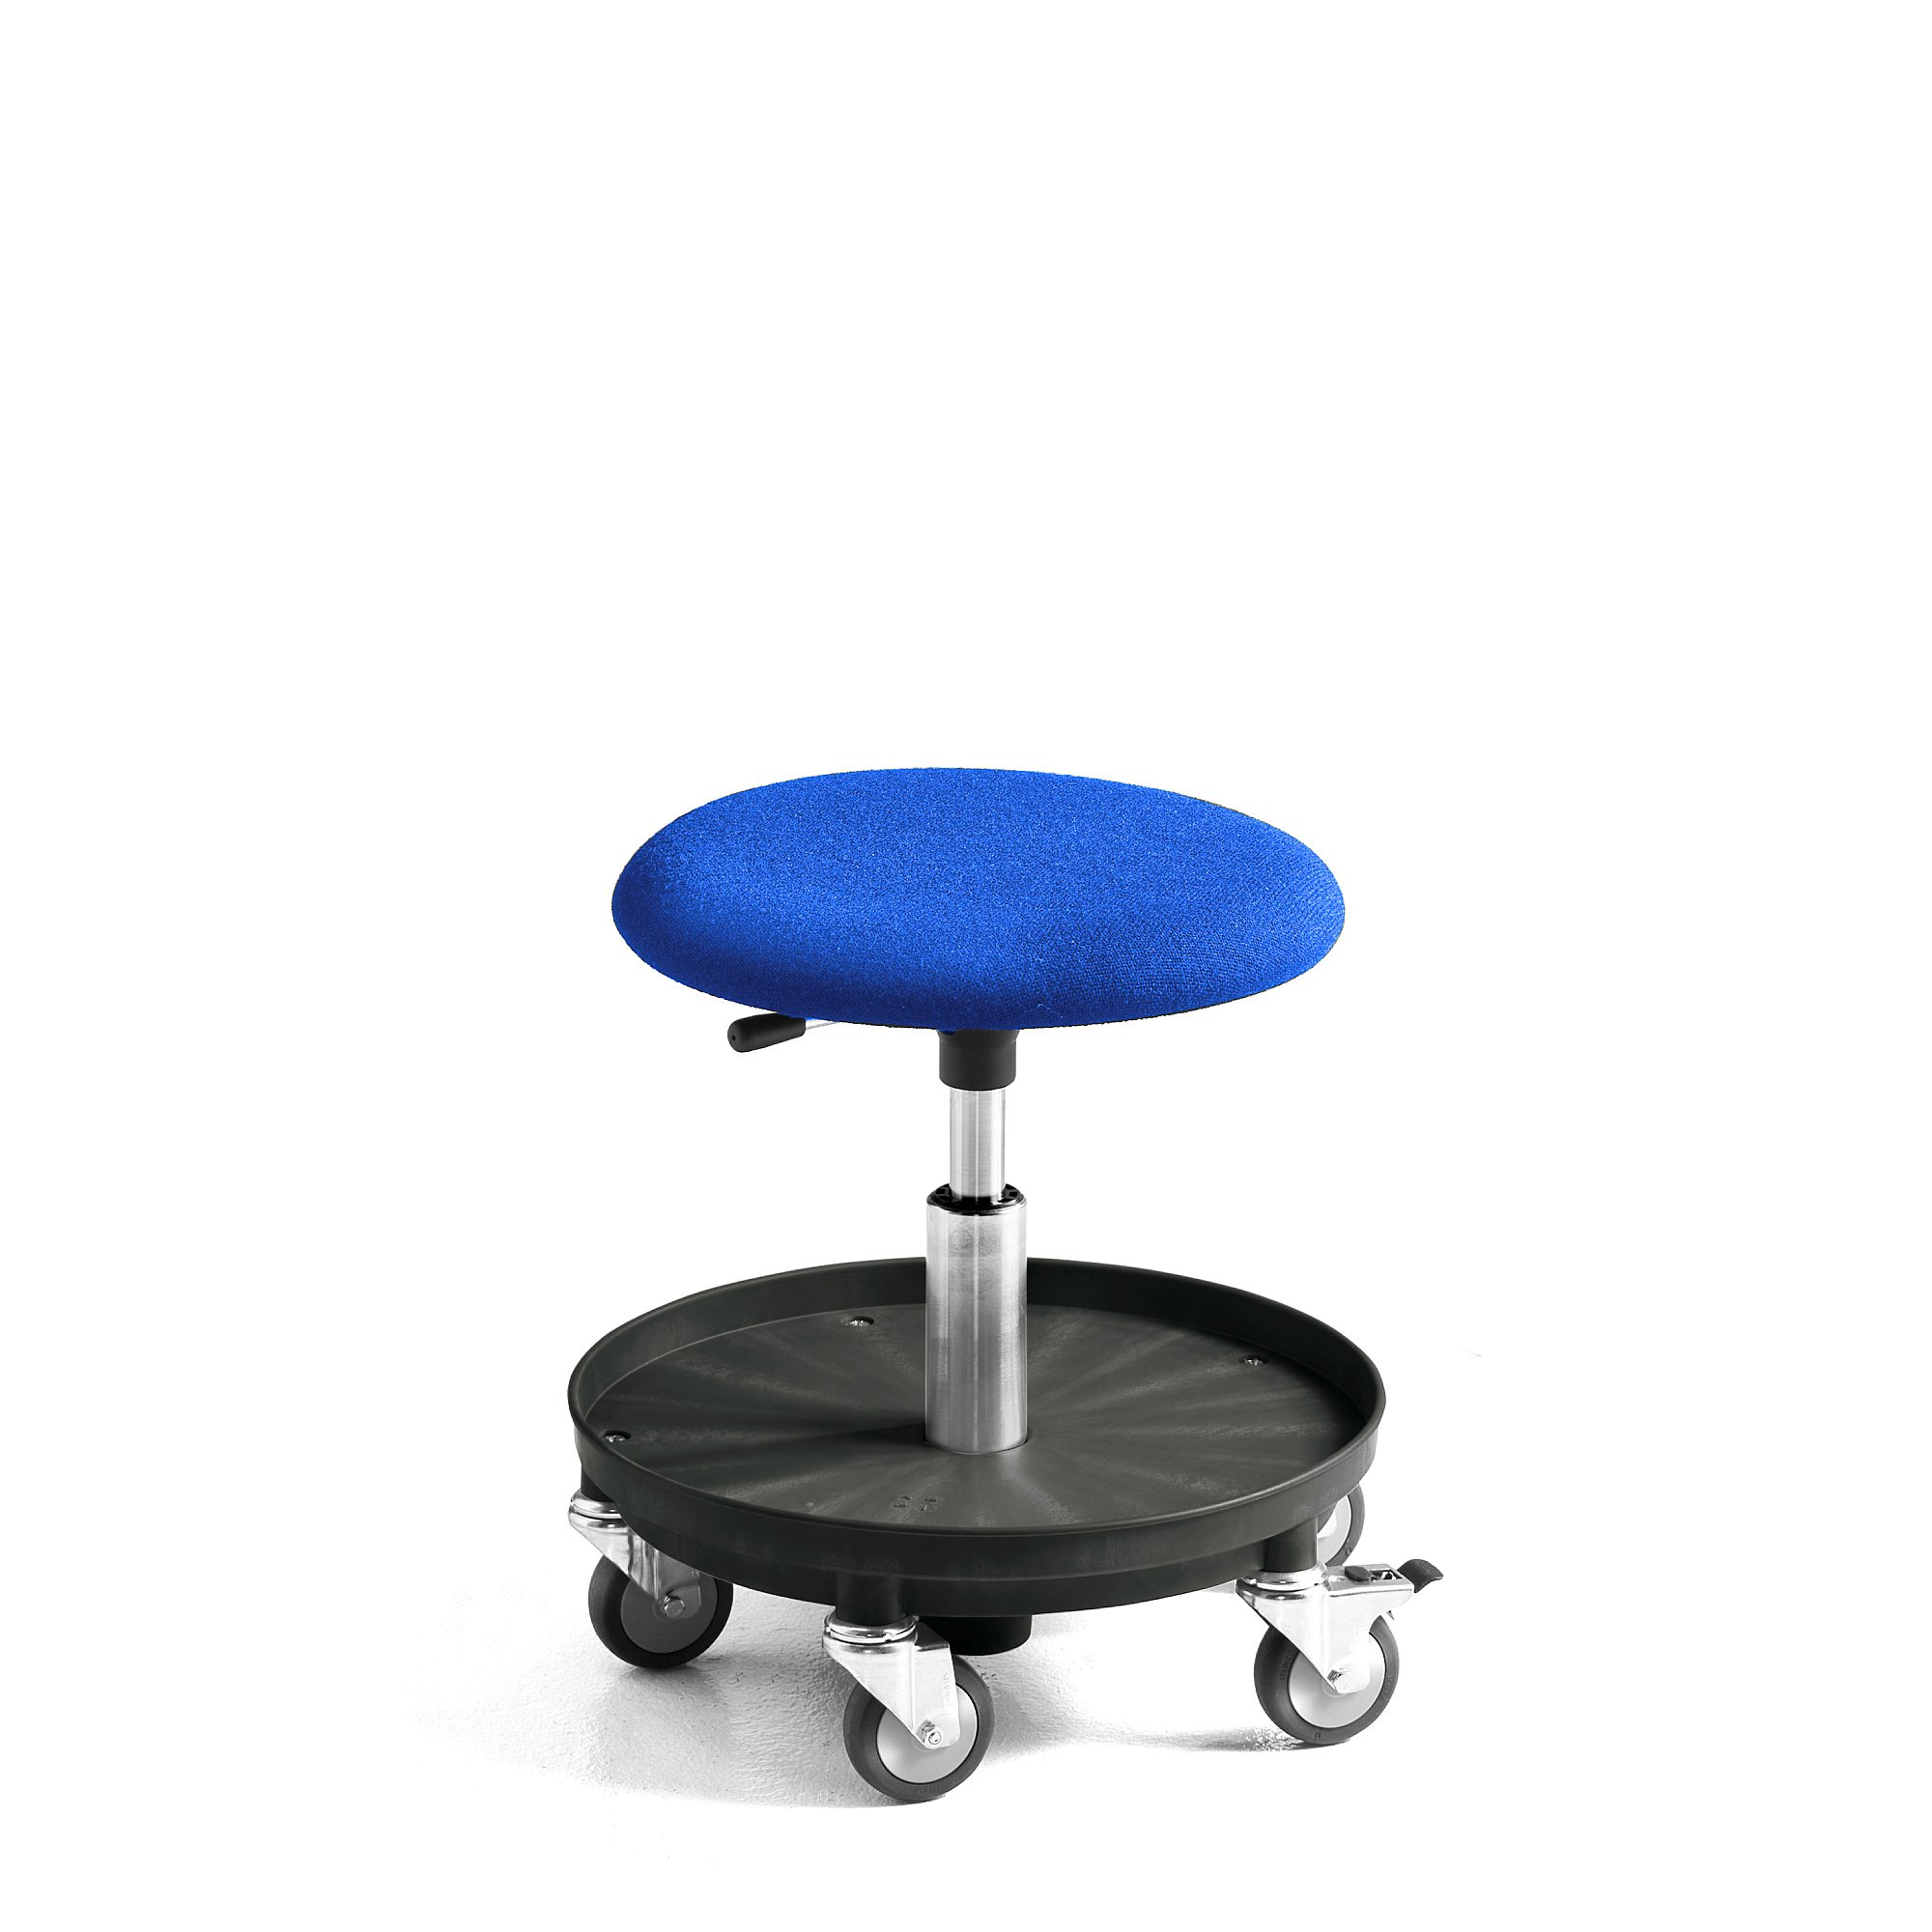 Pracovná dielenská stolička MIDI, s kolieskami, výška 370-500 mm, modrá